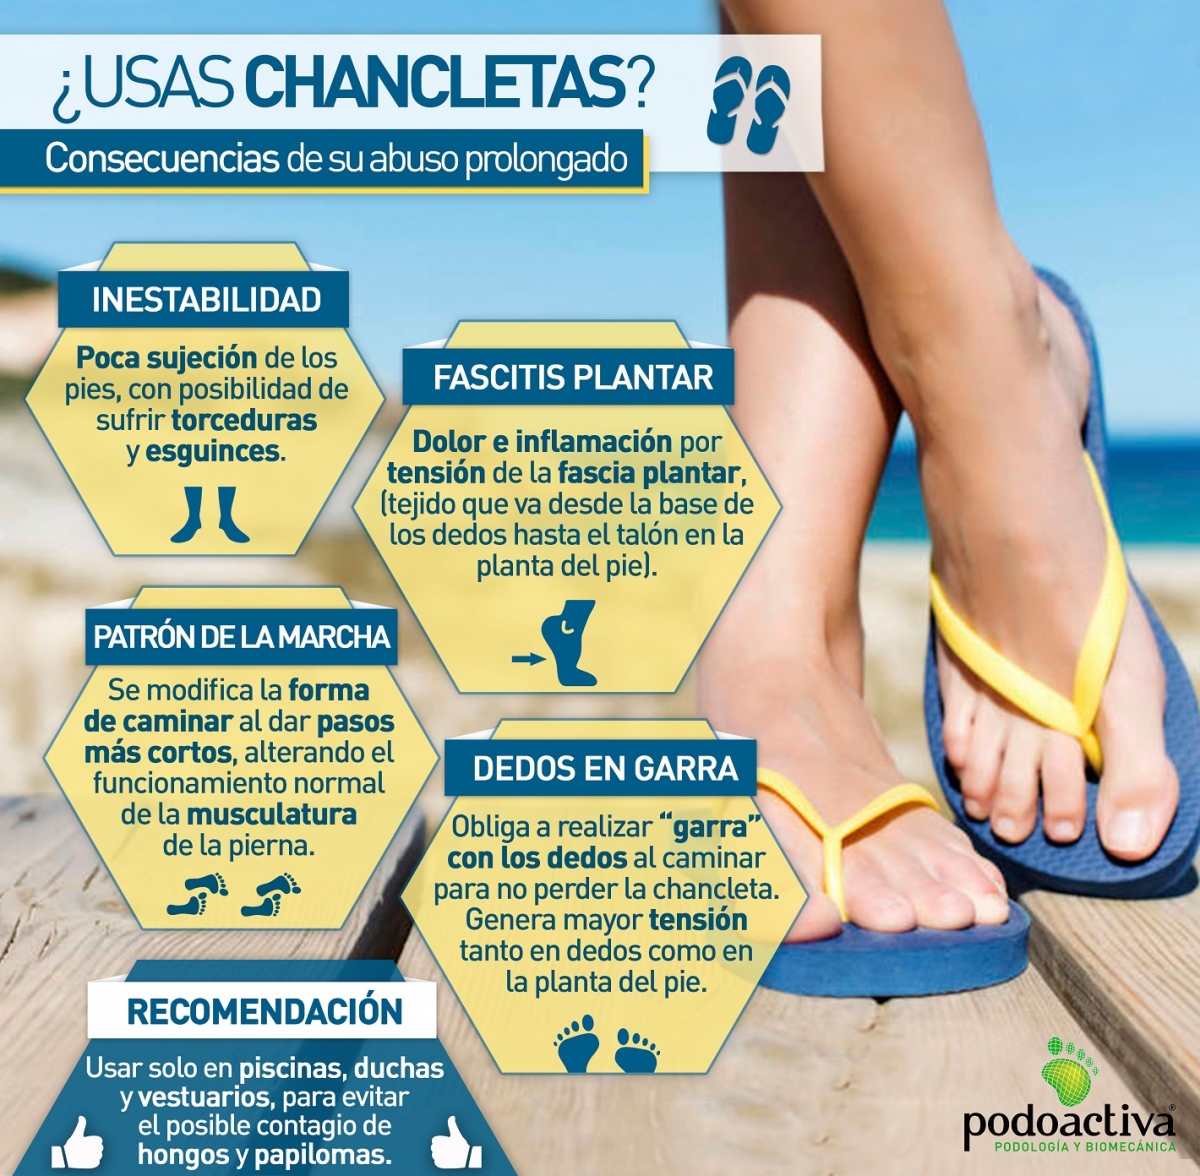 Infografía sobre el uso de chancletas de Podoactiva